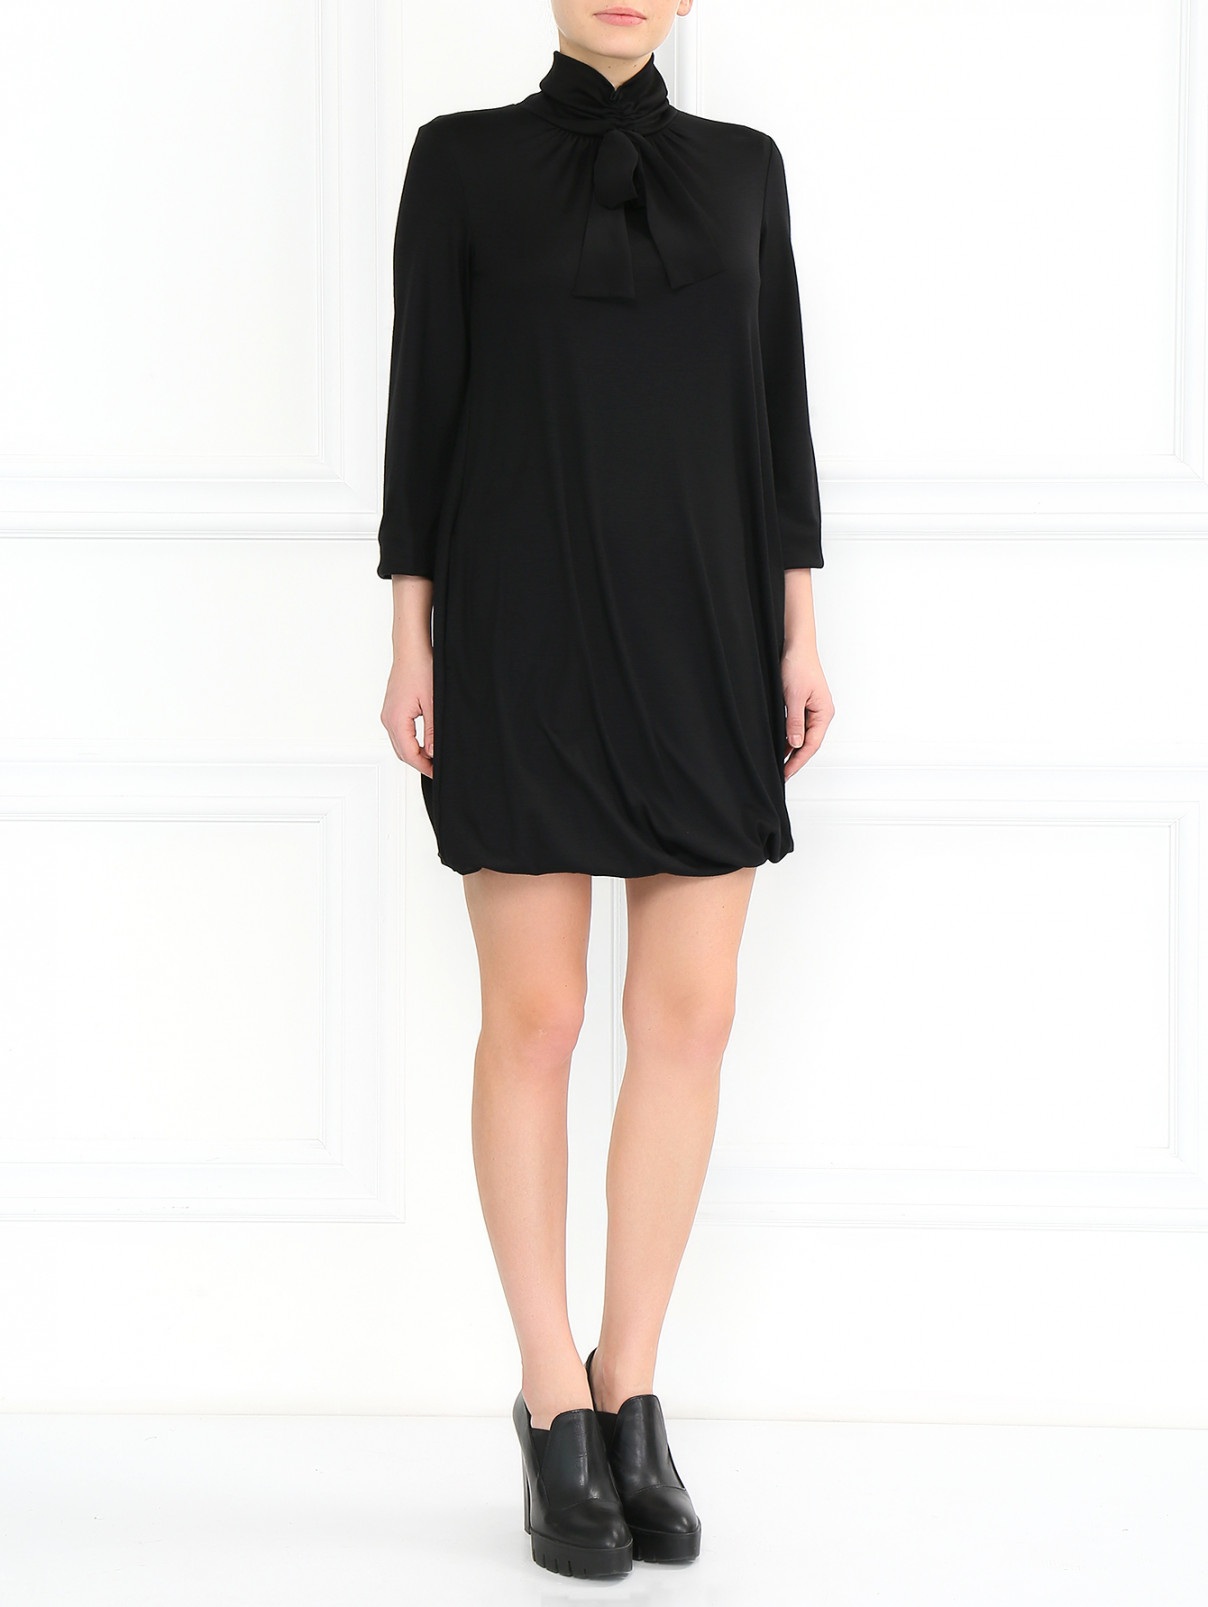 Платье свободного кроя Moschino Cheap&Chic  –  Модель Общий вид  – Цвет:  Черный